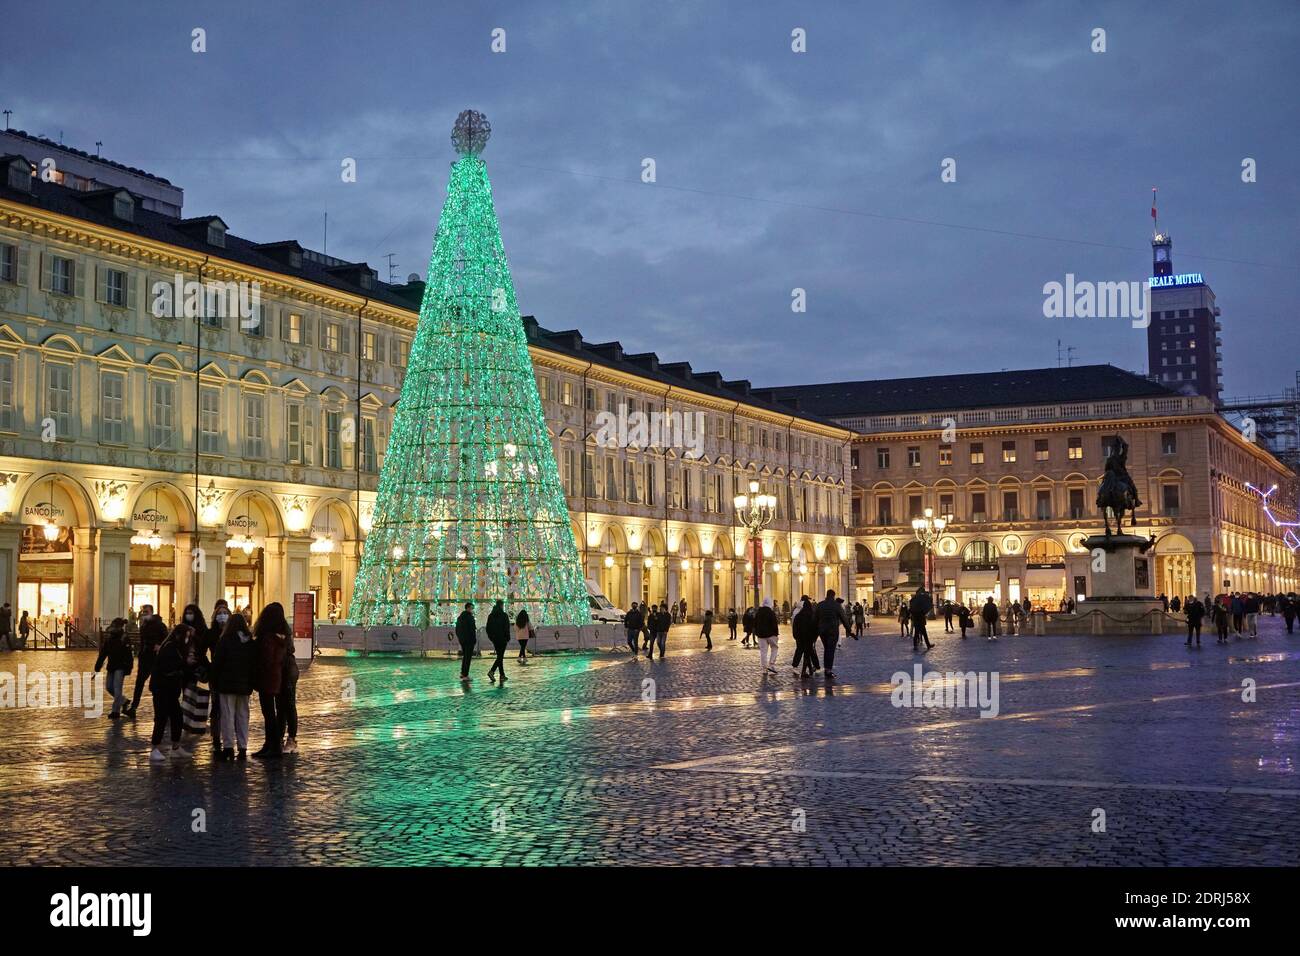 Piazza San Carlo beleuchtet an Weihnachtstagen bei Einbruch der Dunkelheit, Turin, Italien - Dezember 2020 Stockfoto